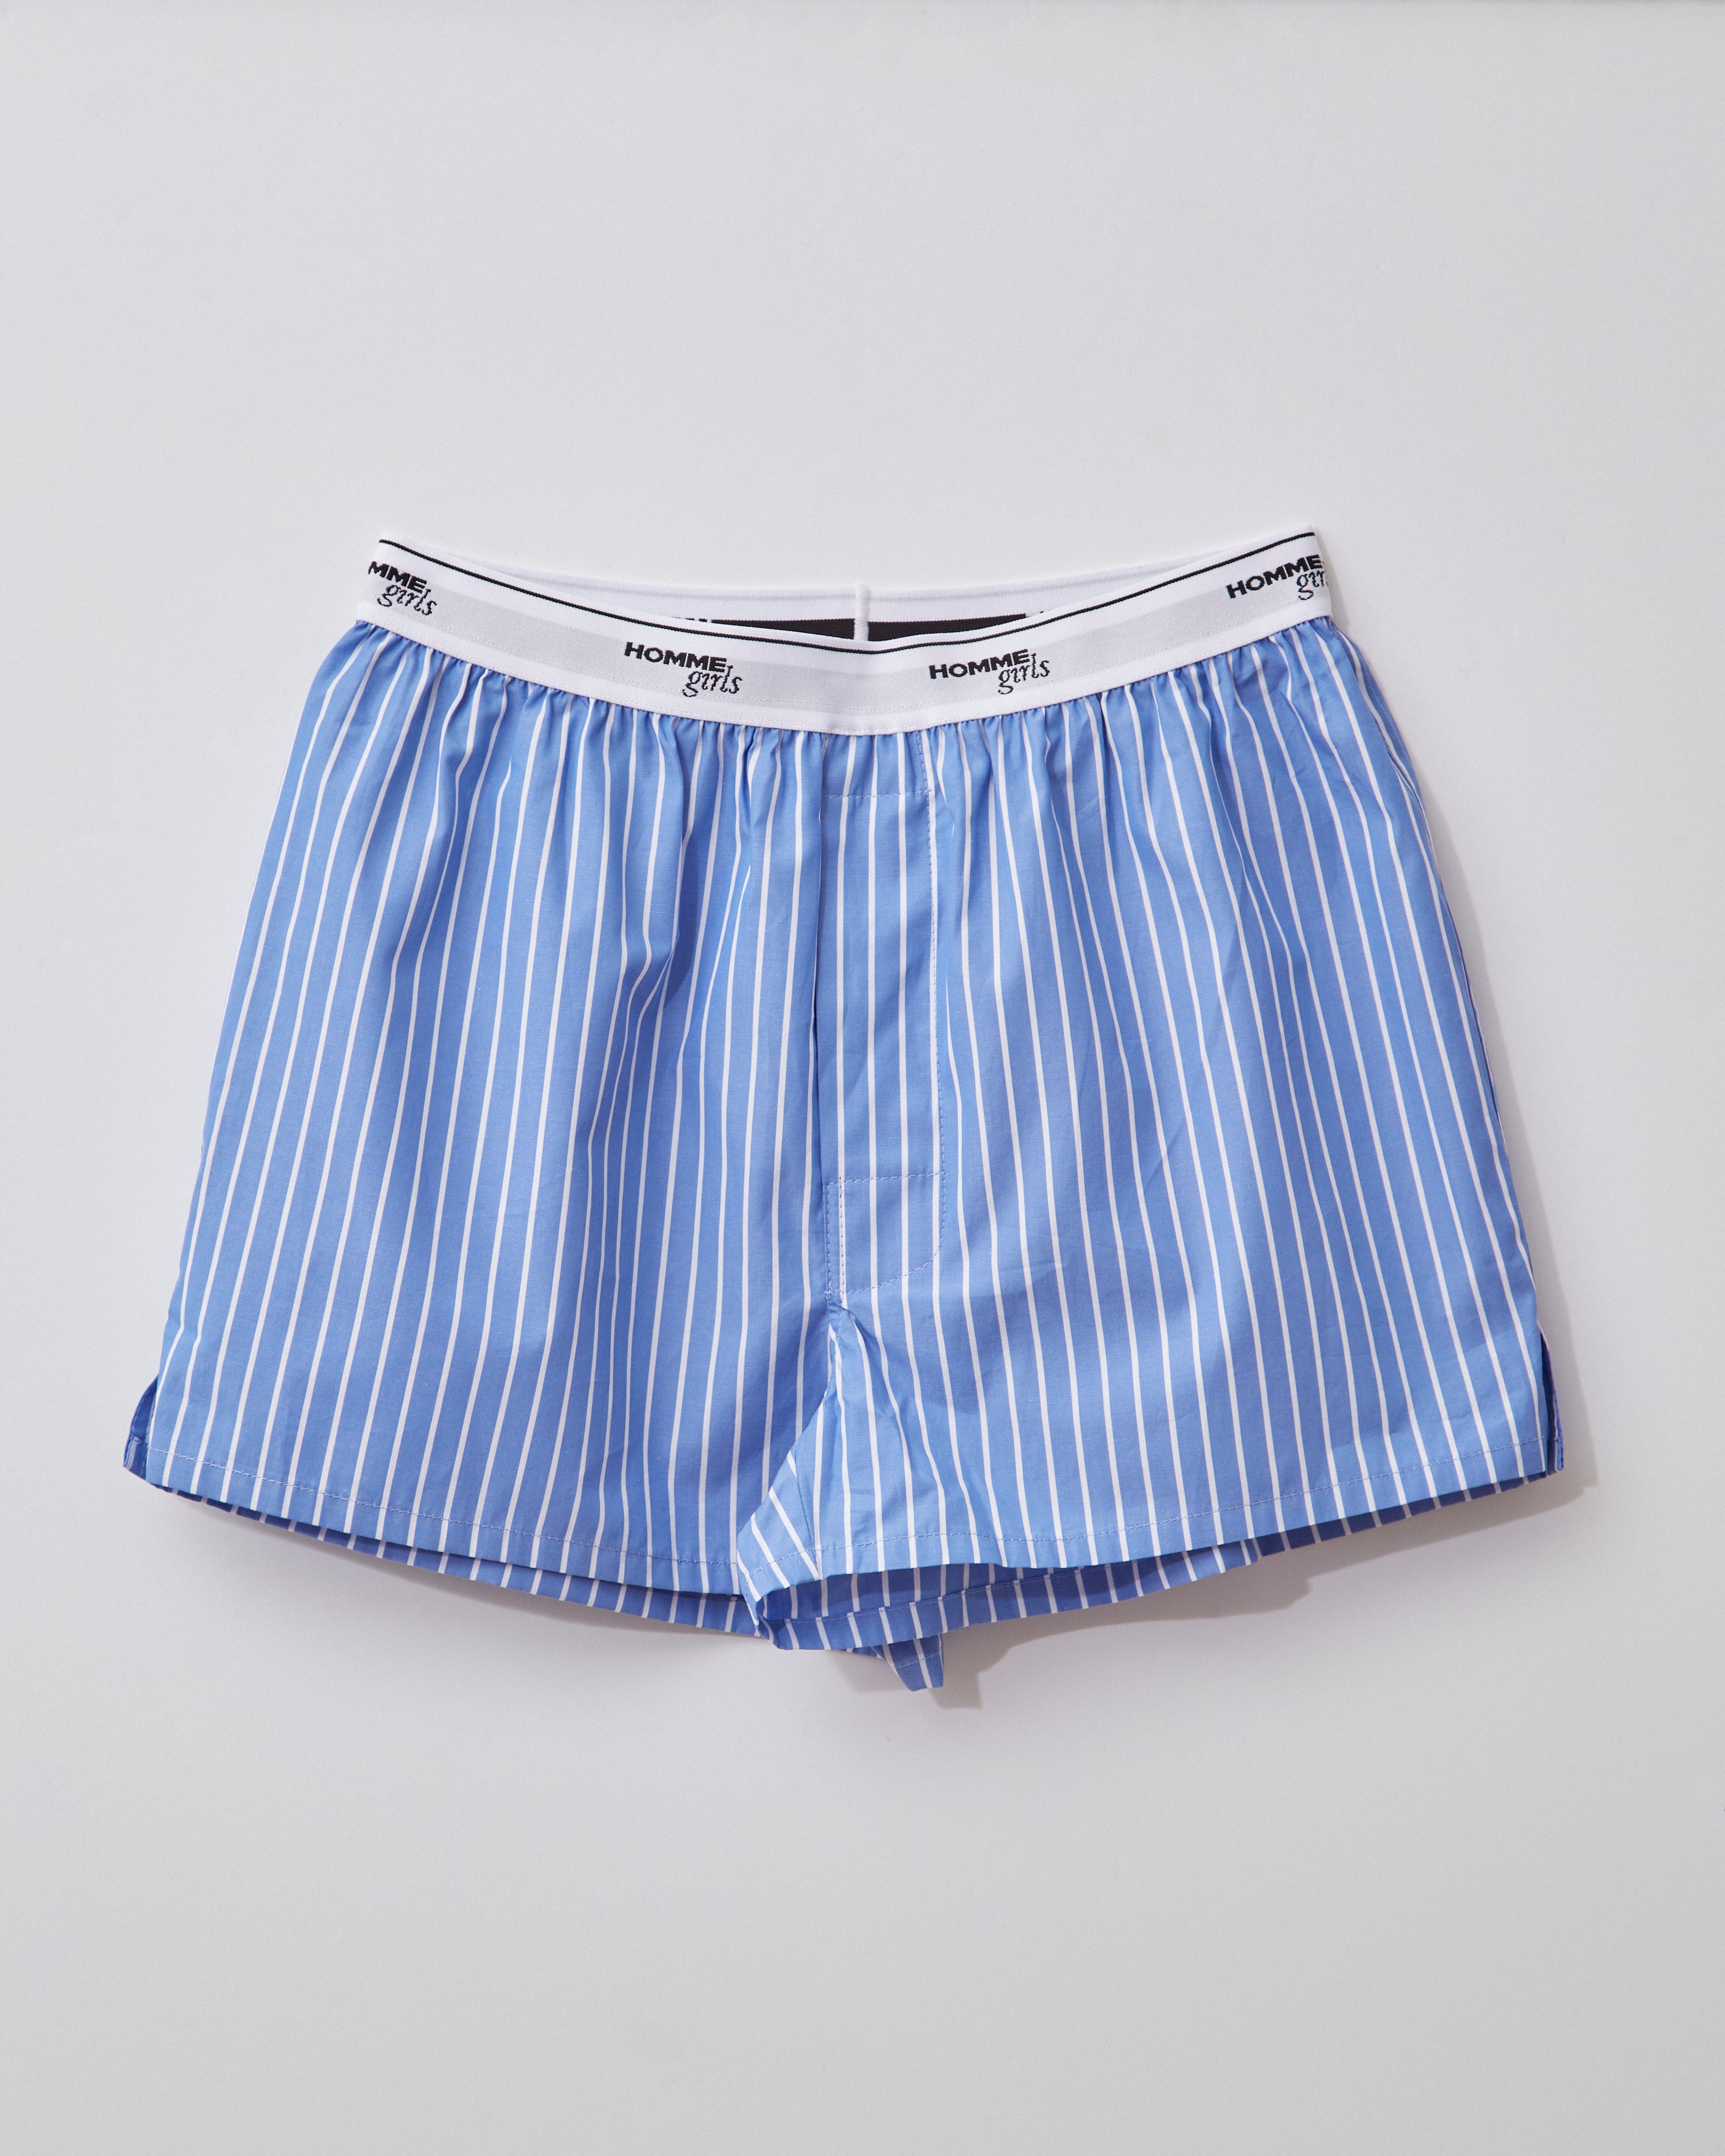 Falari 4-Pack Men's Boxer Underwear 100% Cotton Assorted-01 Medium